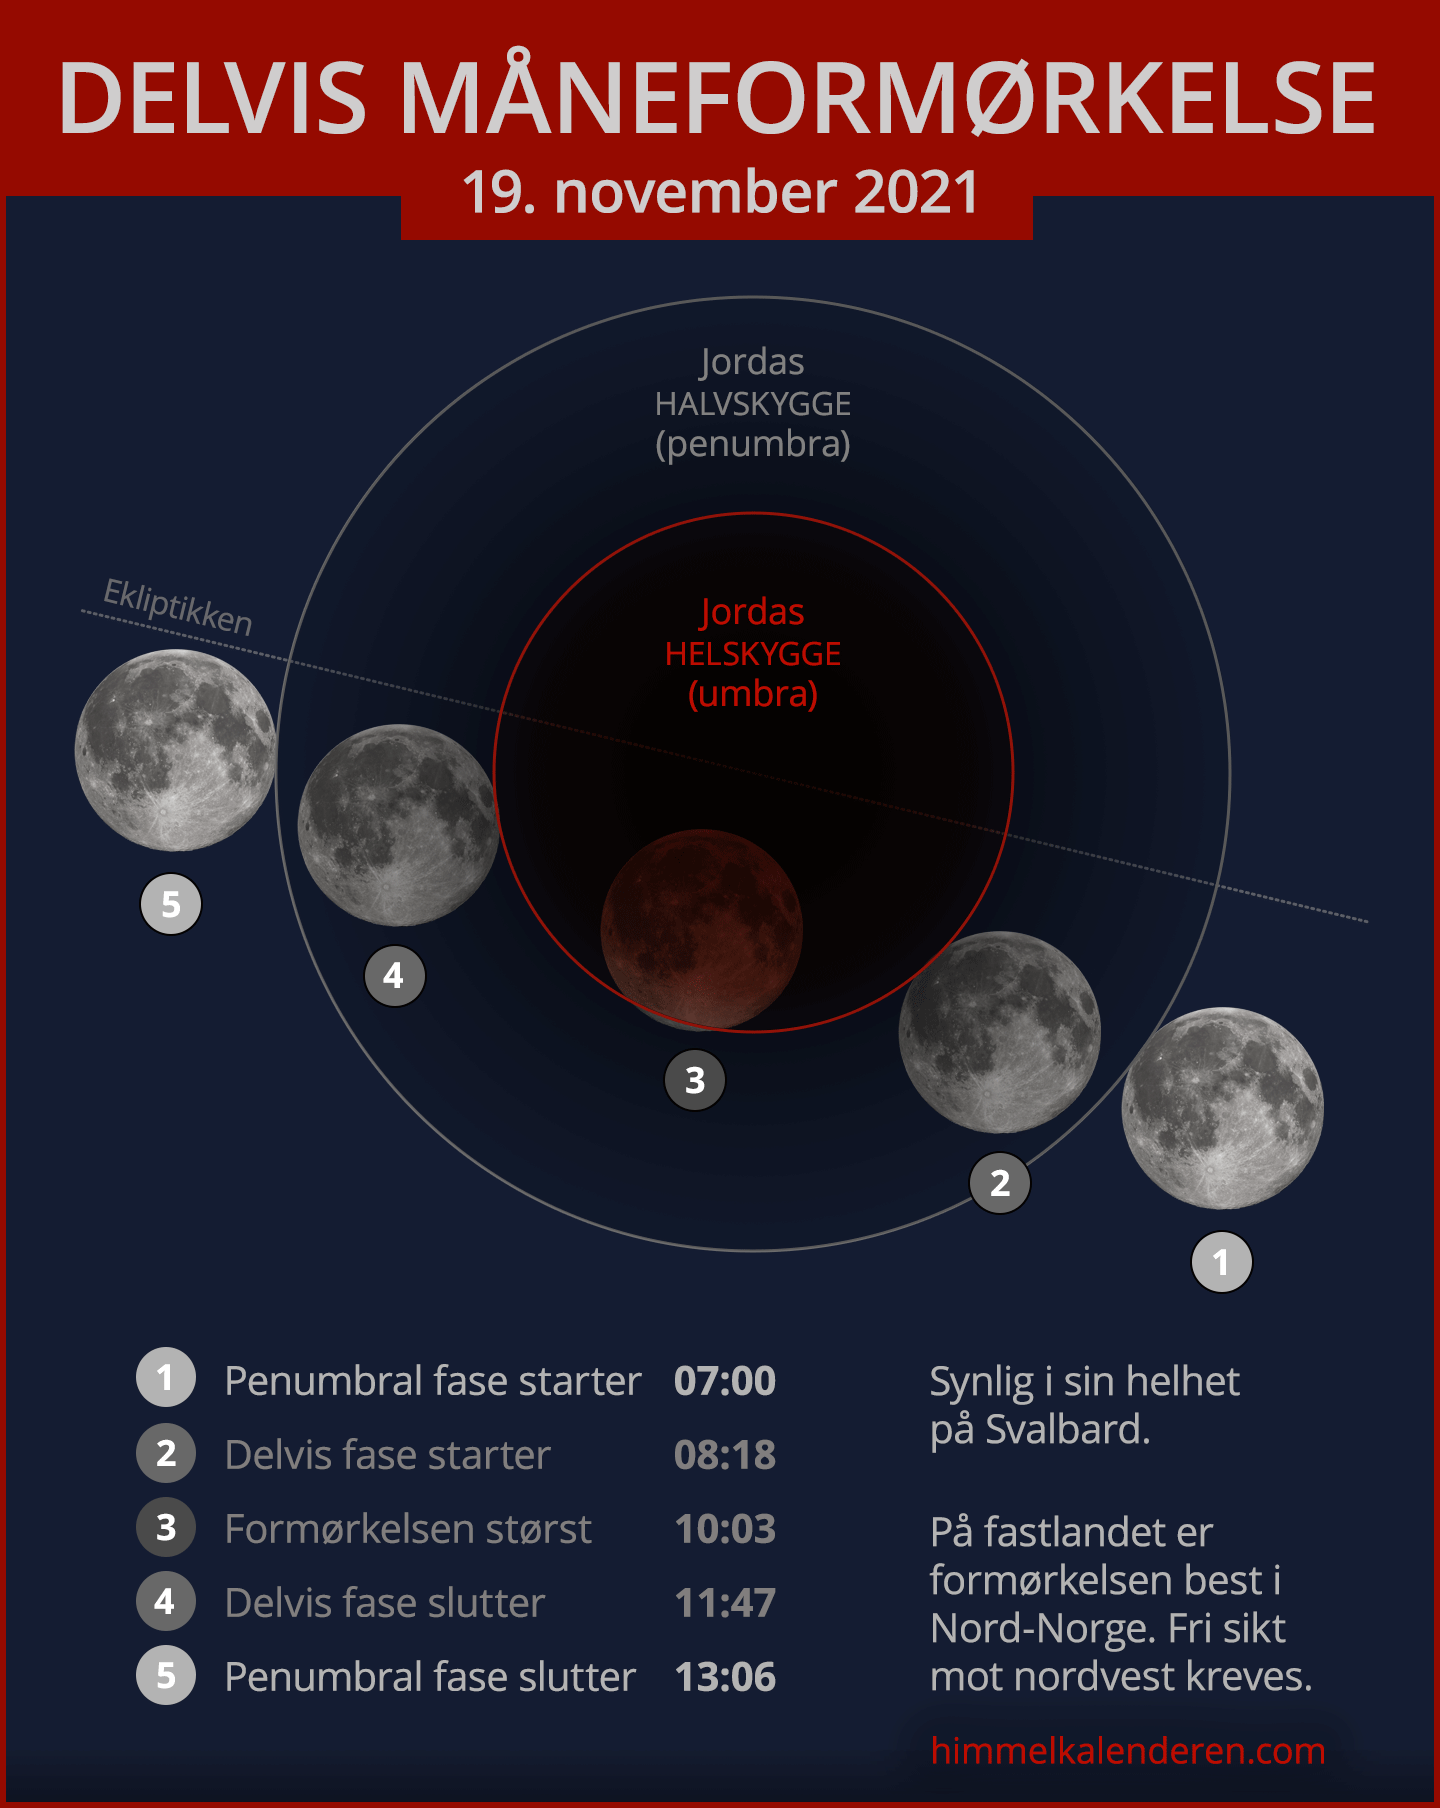 Delvis måneformørkelse 19. november 2021 i Norge